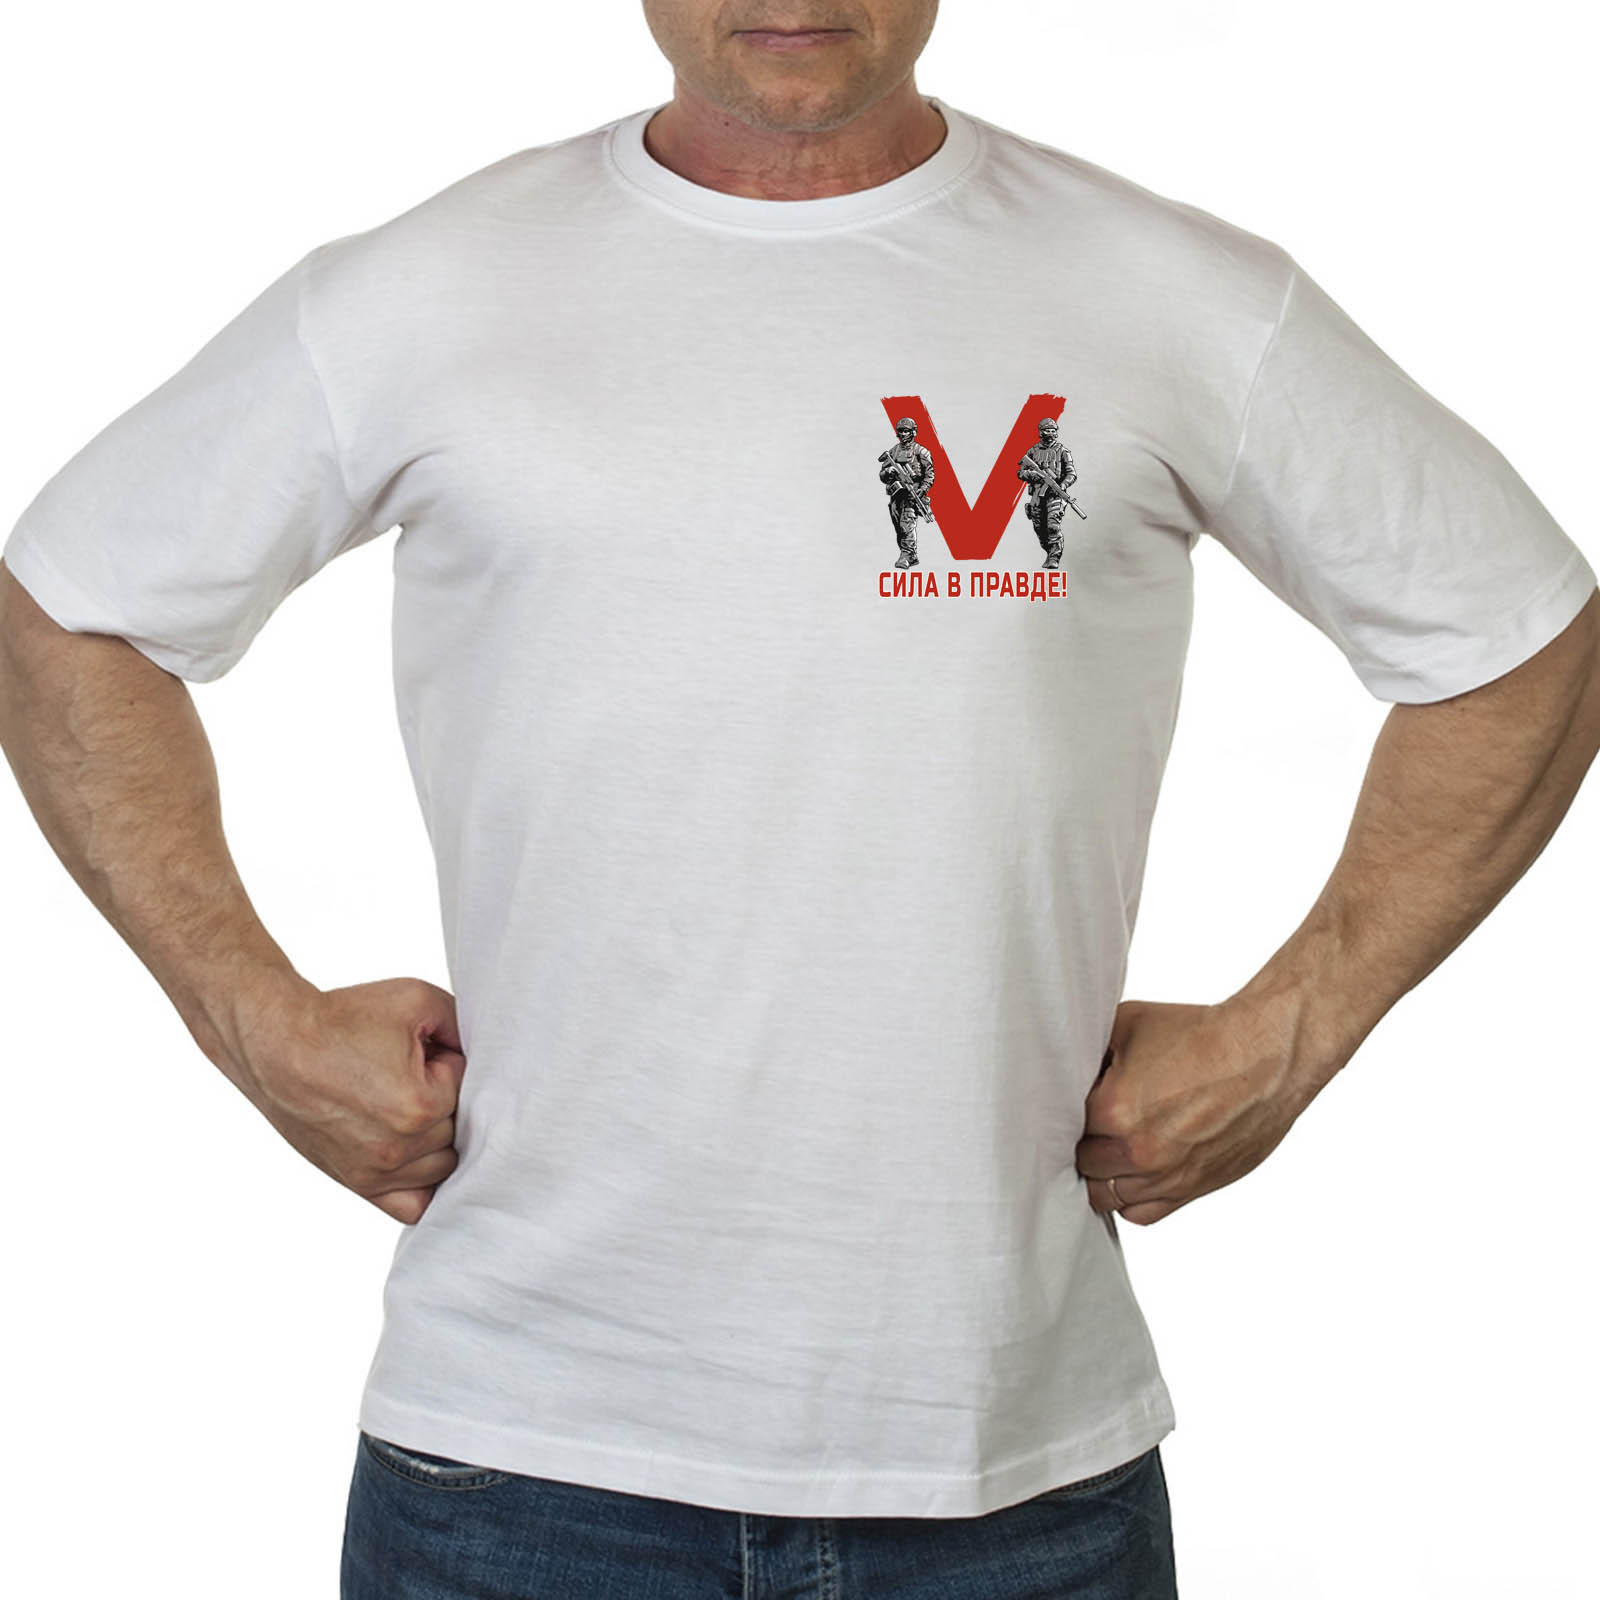 Купить в интернет магазине мужскую хлопковую футболку со знаком V